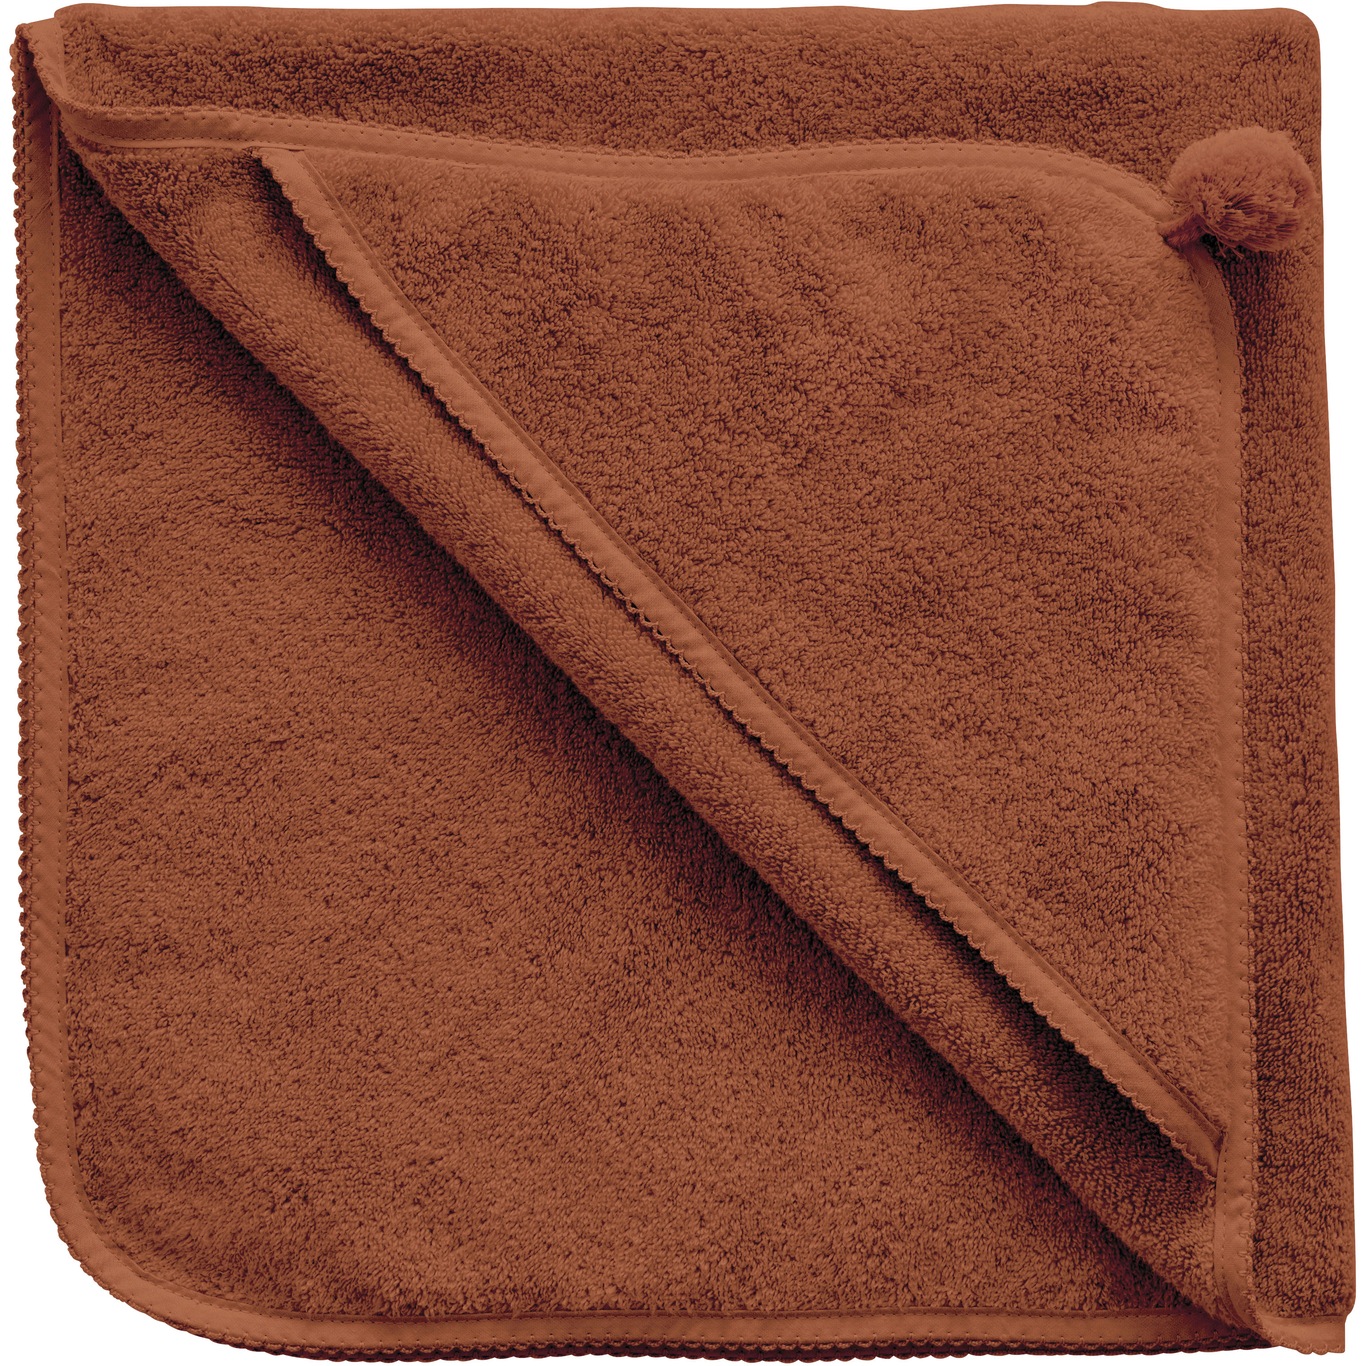 Cinnamon Baby Hooded Towel